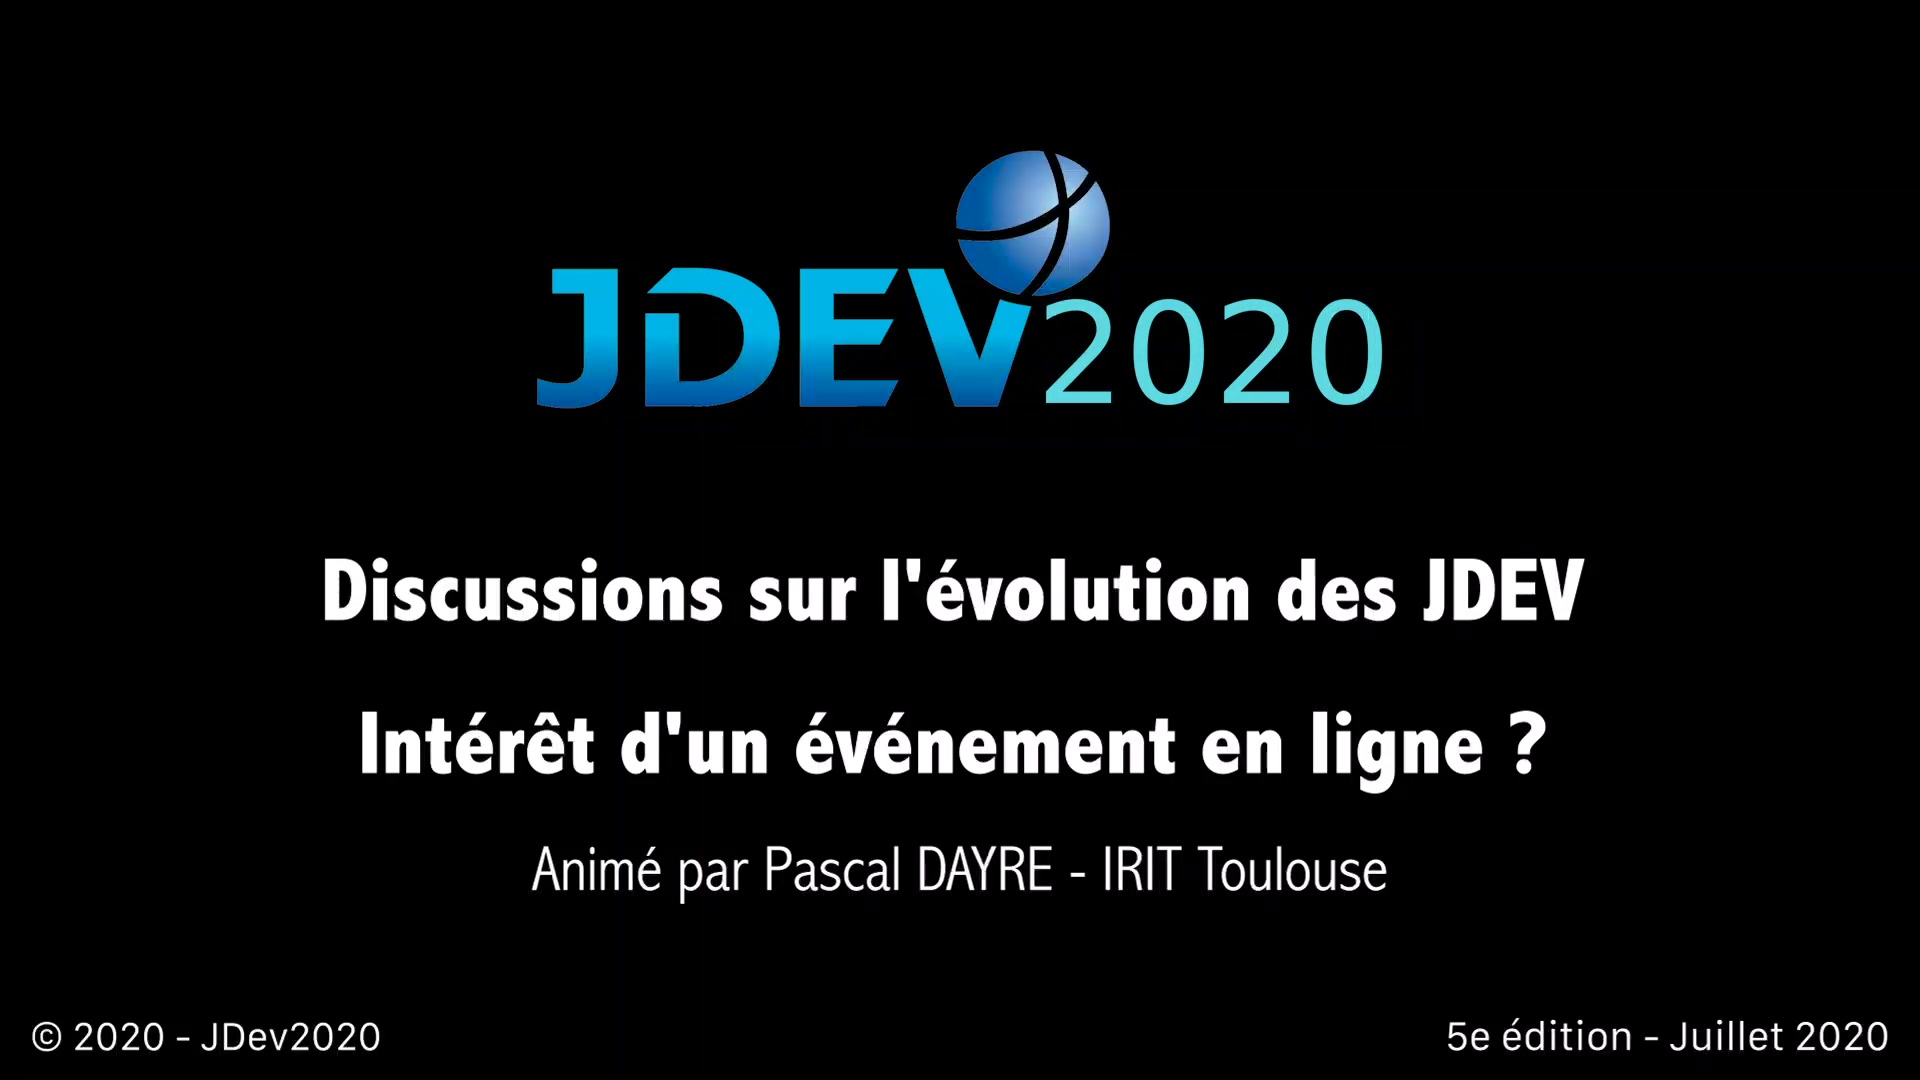 JDev2020 : Discussions sur l'évolution des JDev ; Intérêt d'un évènement en ligne ?